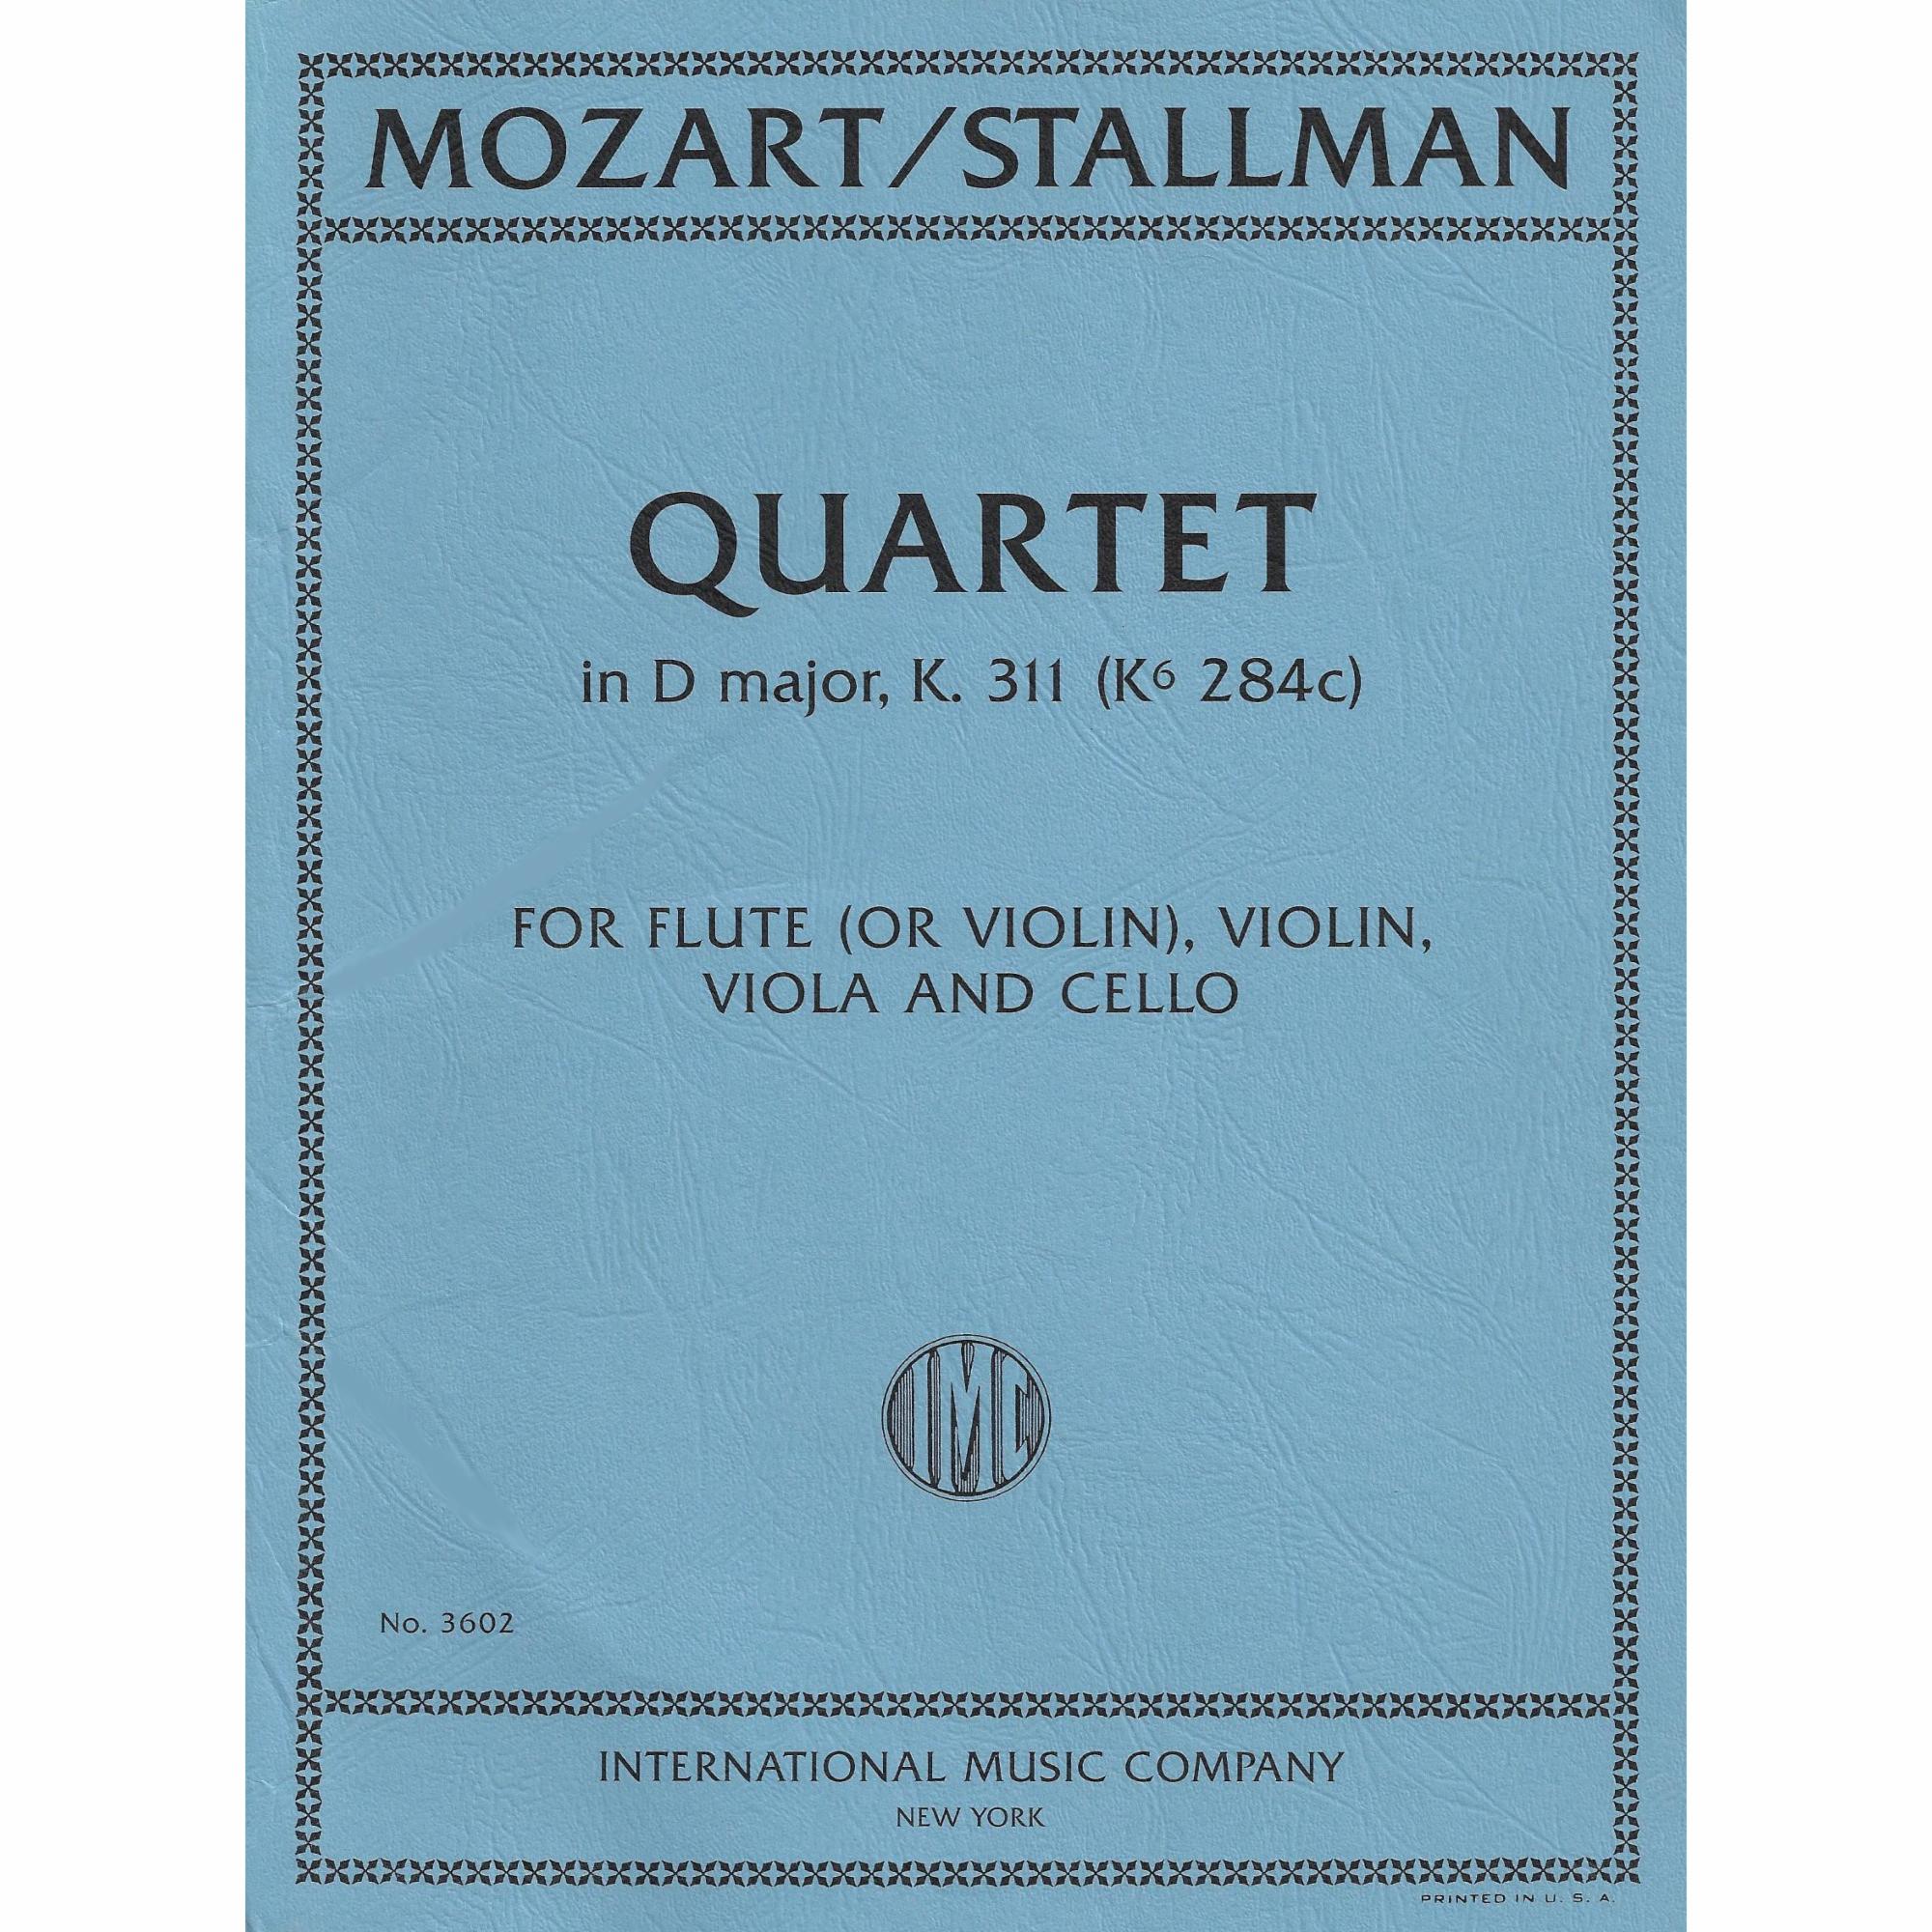 Mozart -- Piano Sonata No. 9 in D Major, K. 311, arr. String Quartet